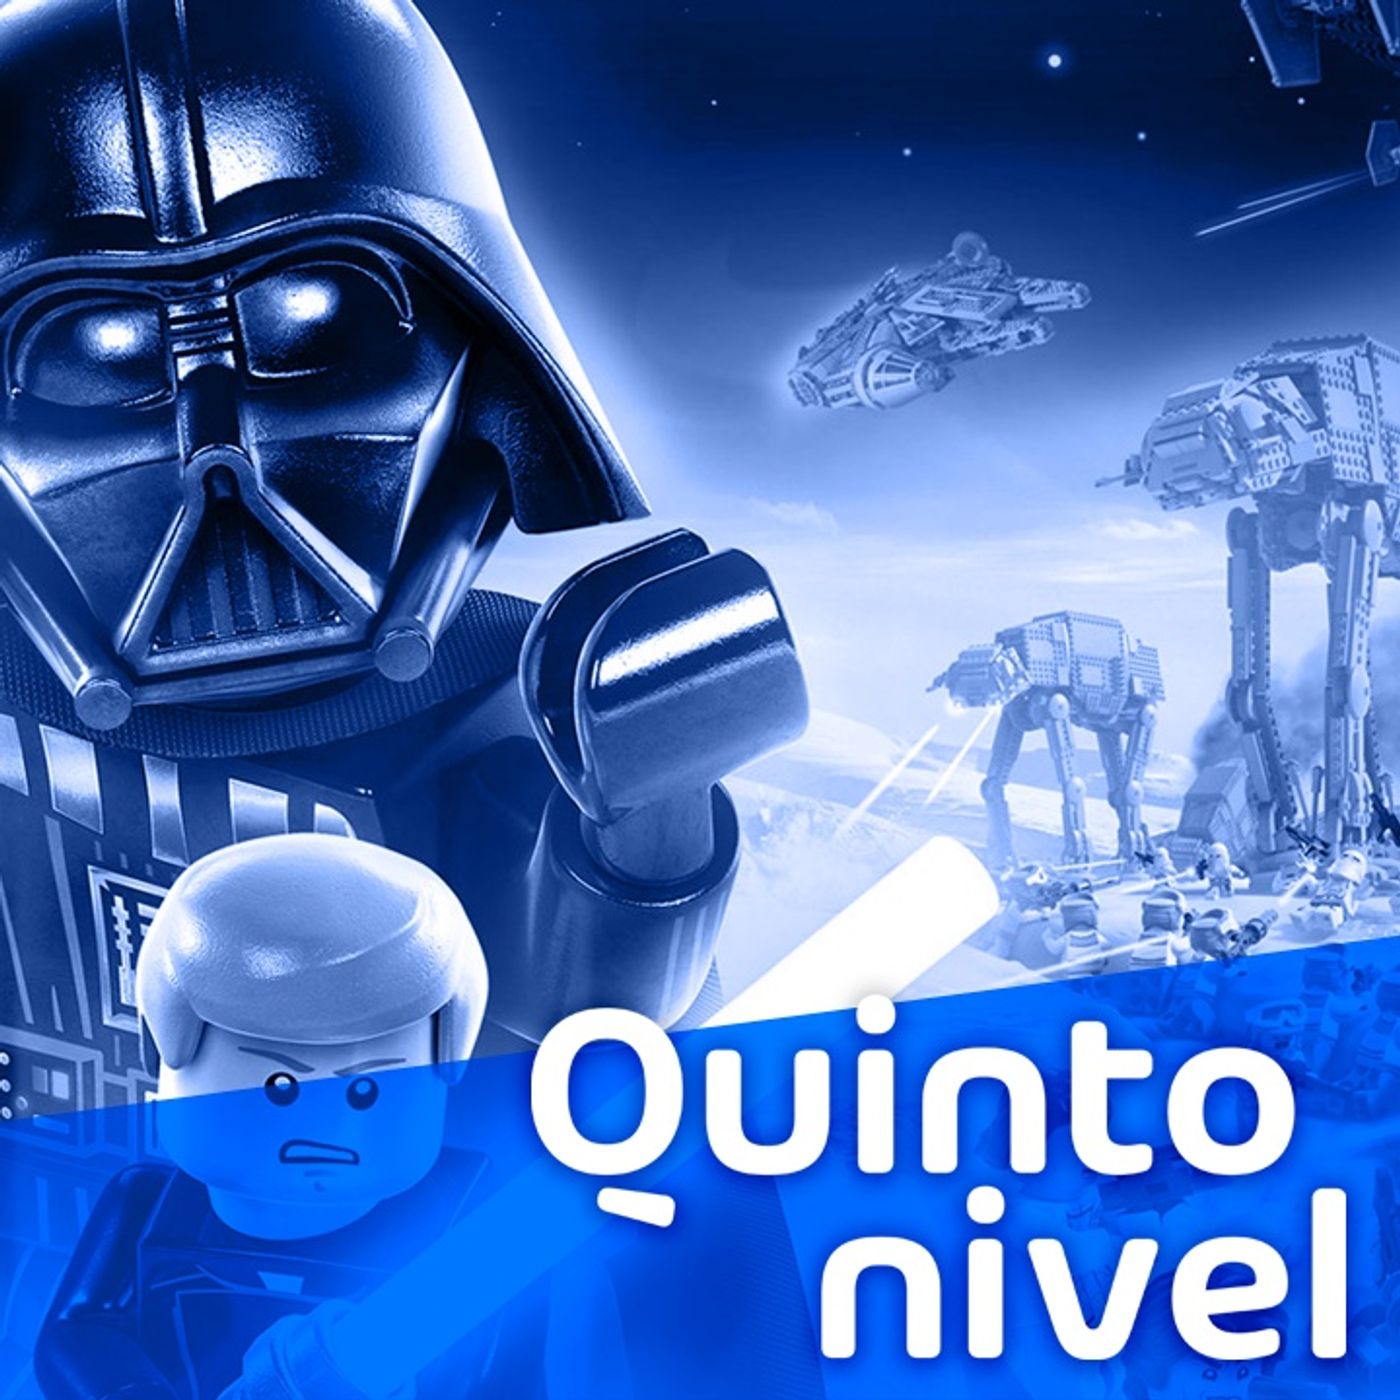 La Fuerza nos acompaña con Lego Star Wars: The Skywalker Saga